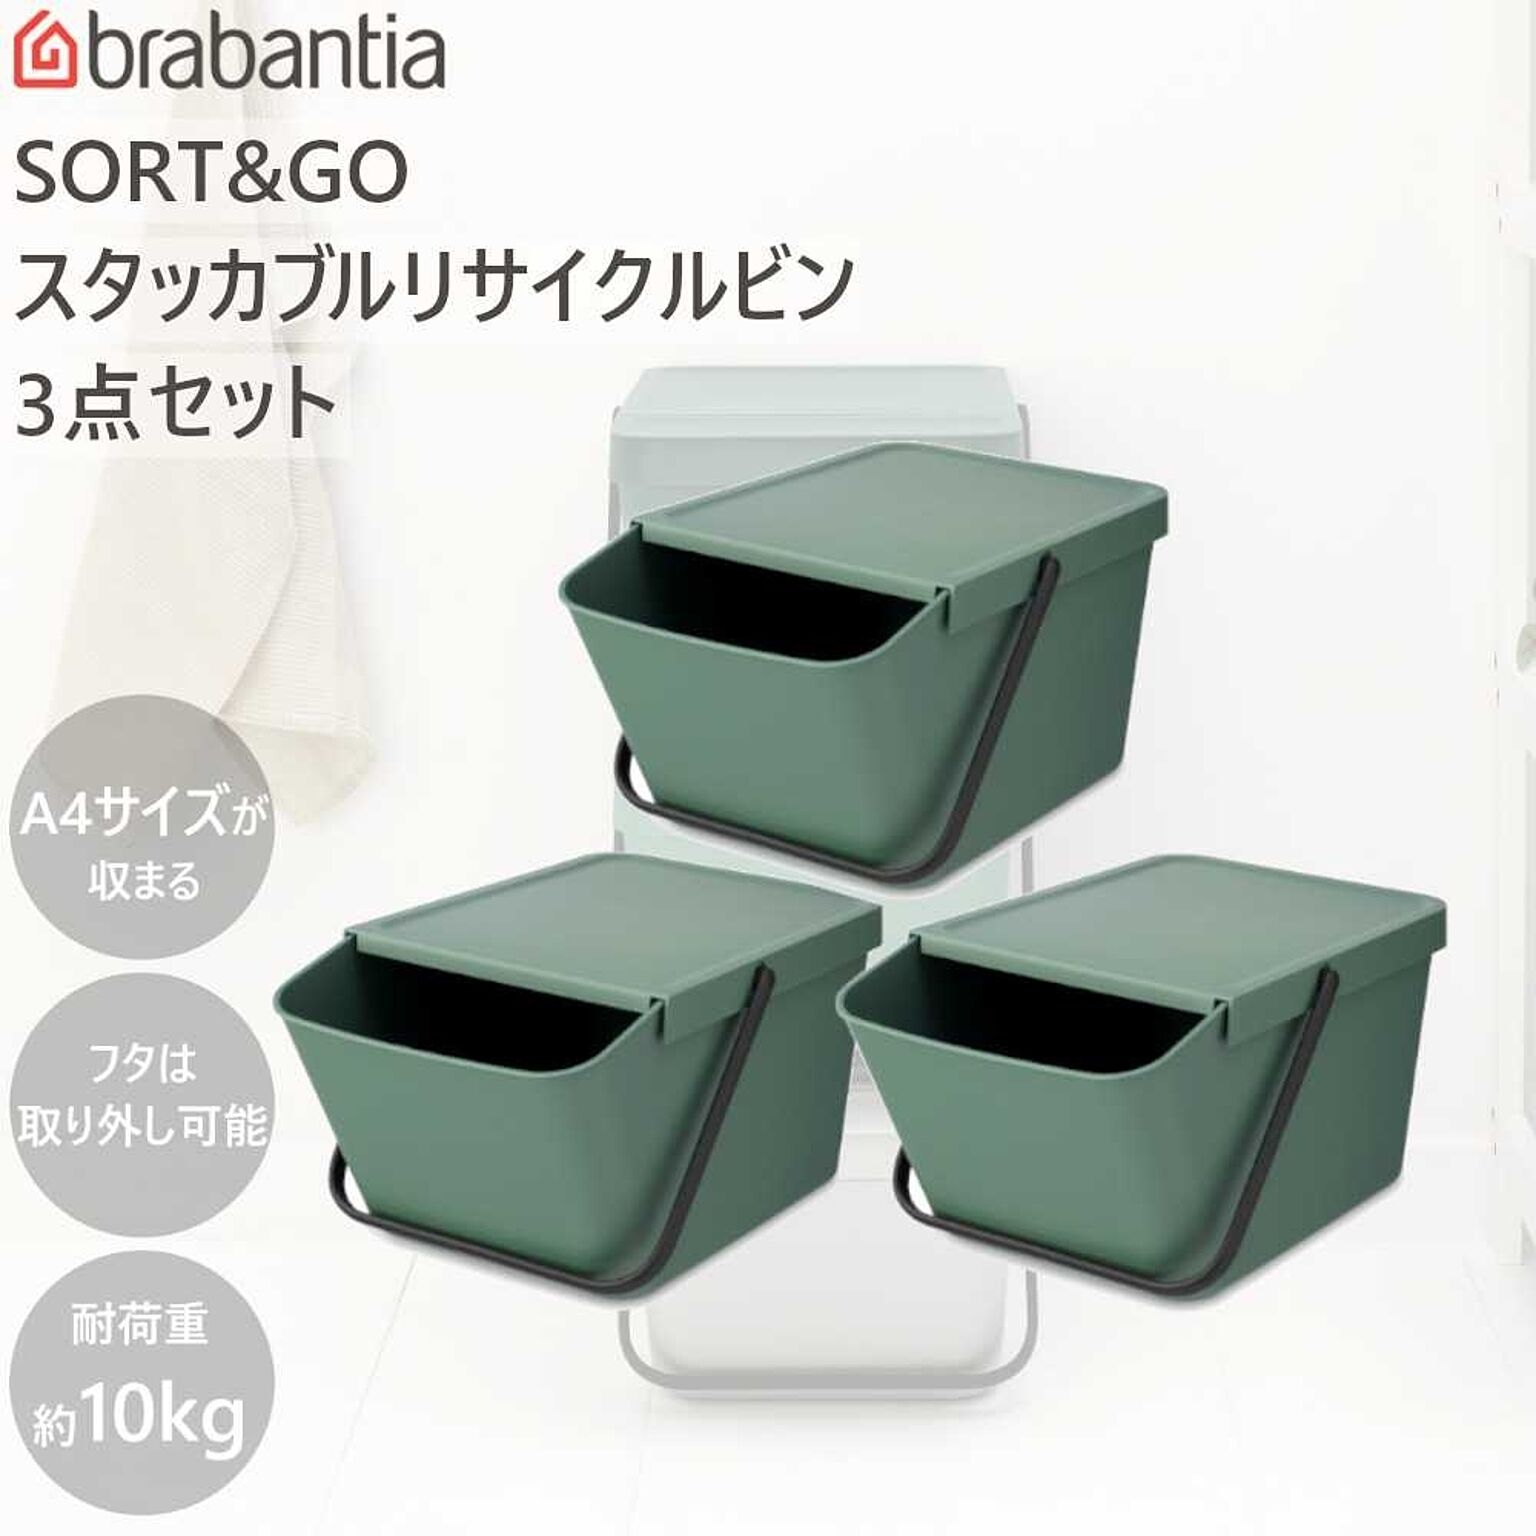 ダストボックス ゴミ箱 SORT&GO スタッカブル リサイクルビン 20L 3個セット ブラバンシア Brabantia